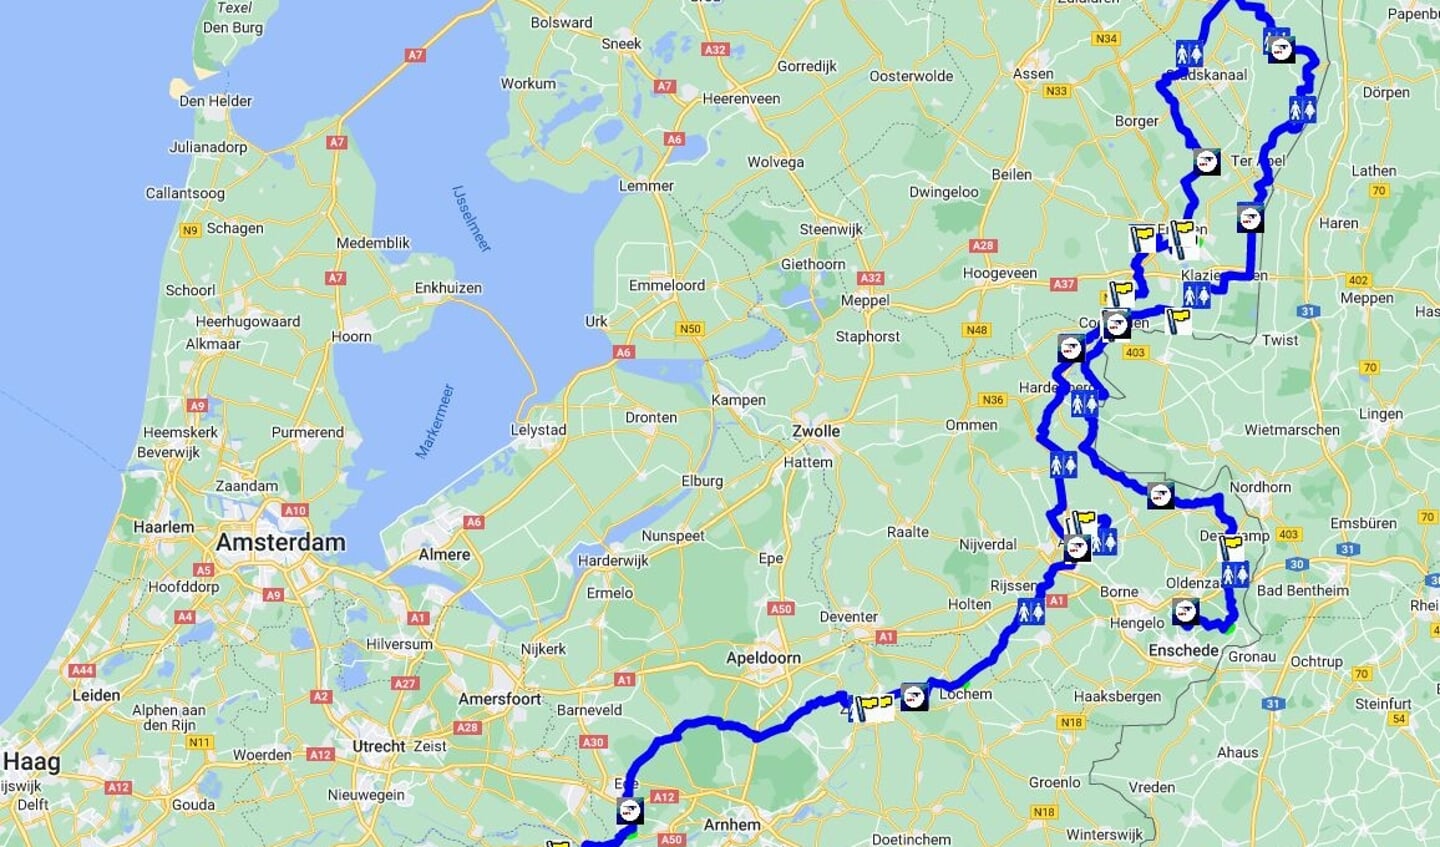 De route voert het team eerst van Twenthe naar Oude Pekela en dan naar Rotterdam.